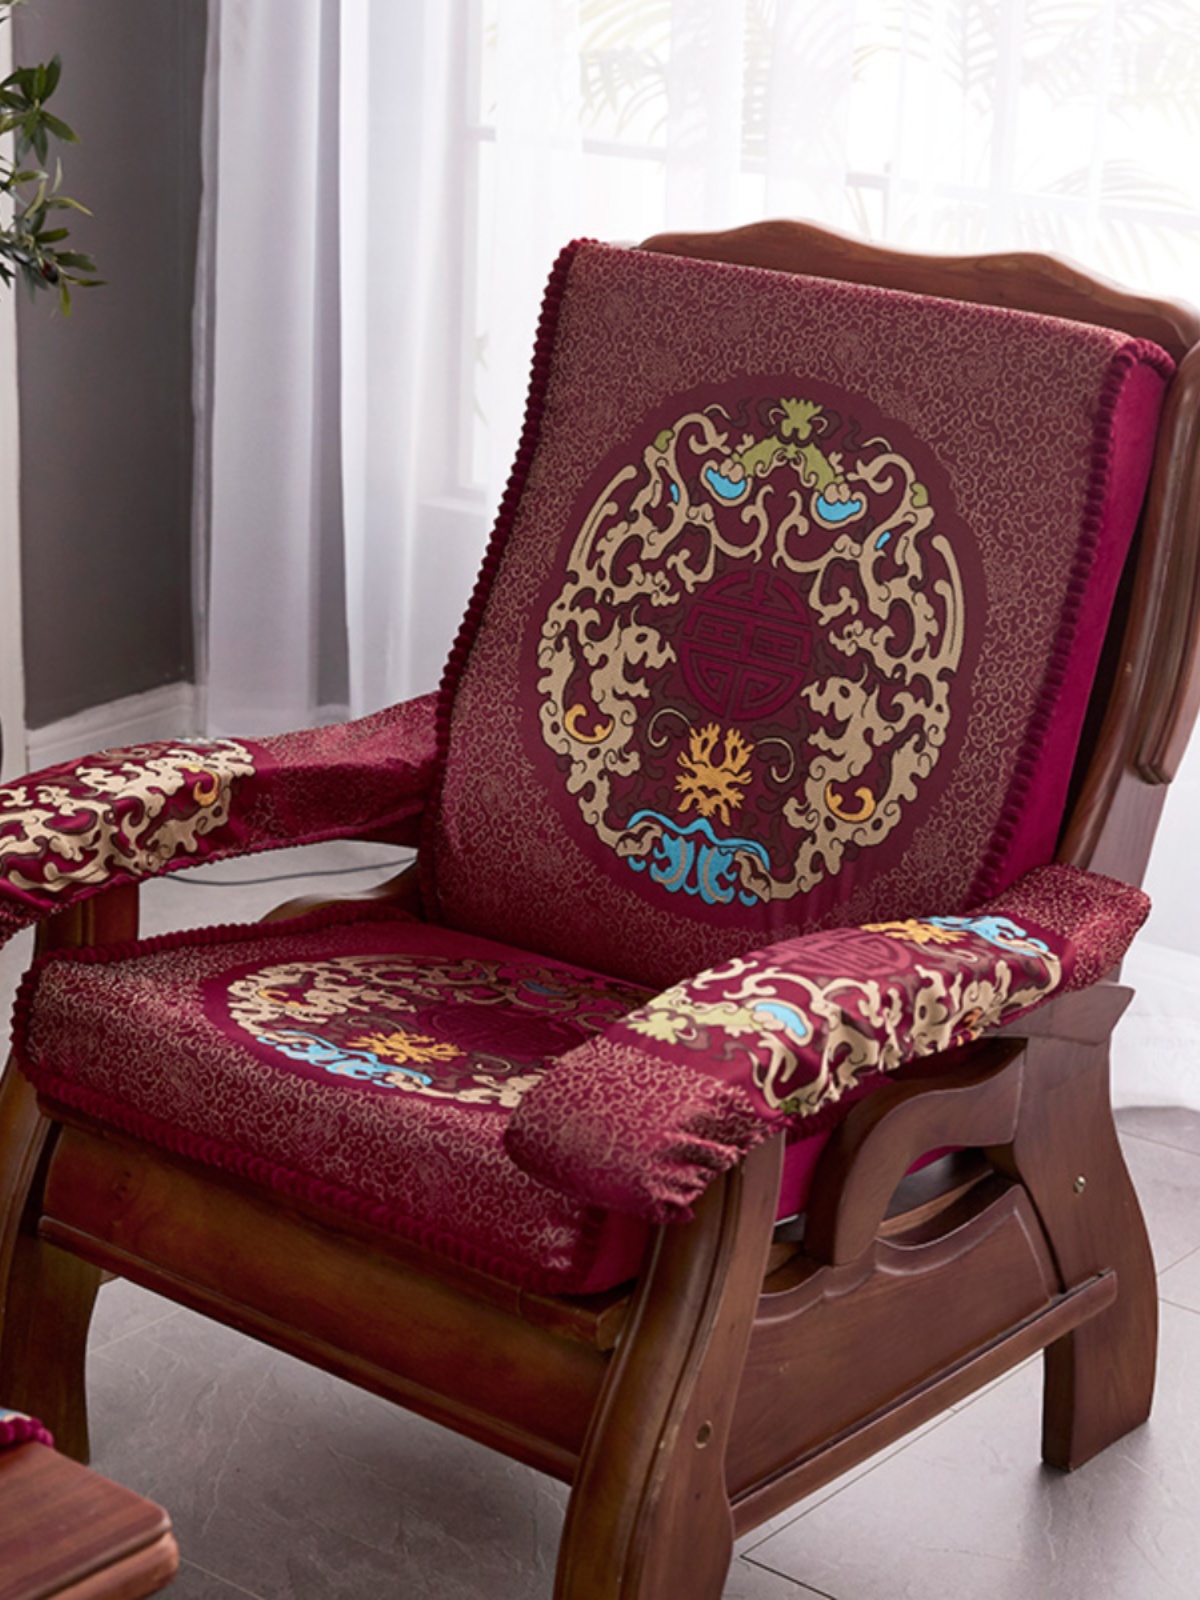 新中式老式沙發墊紅木防滑加厚適合單人三人沙發使用